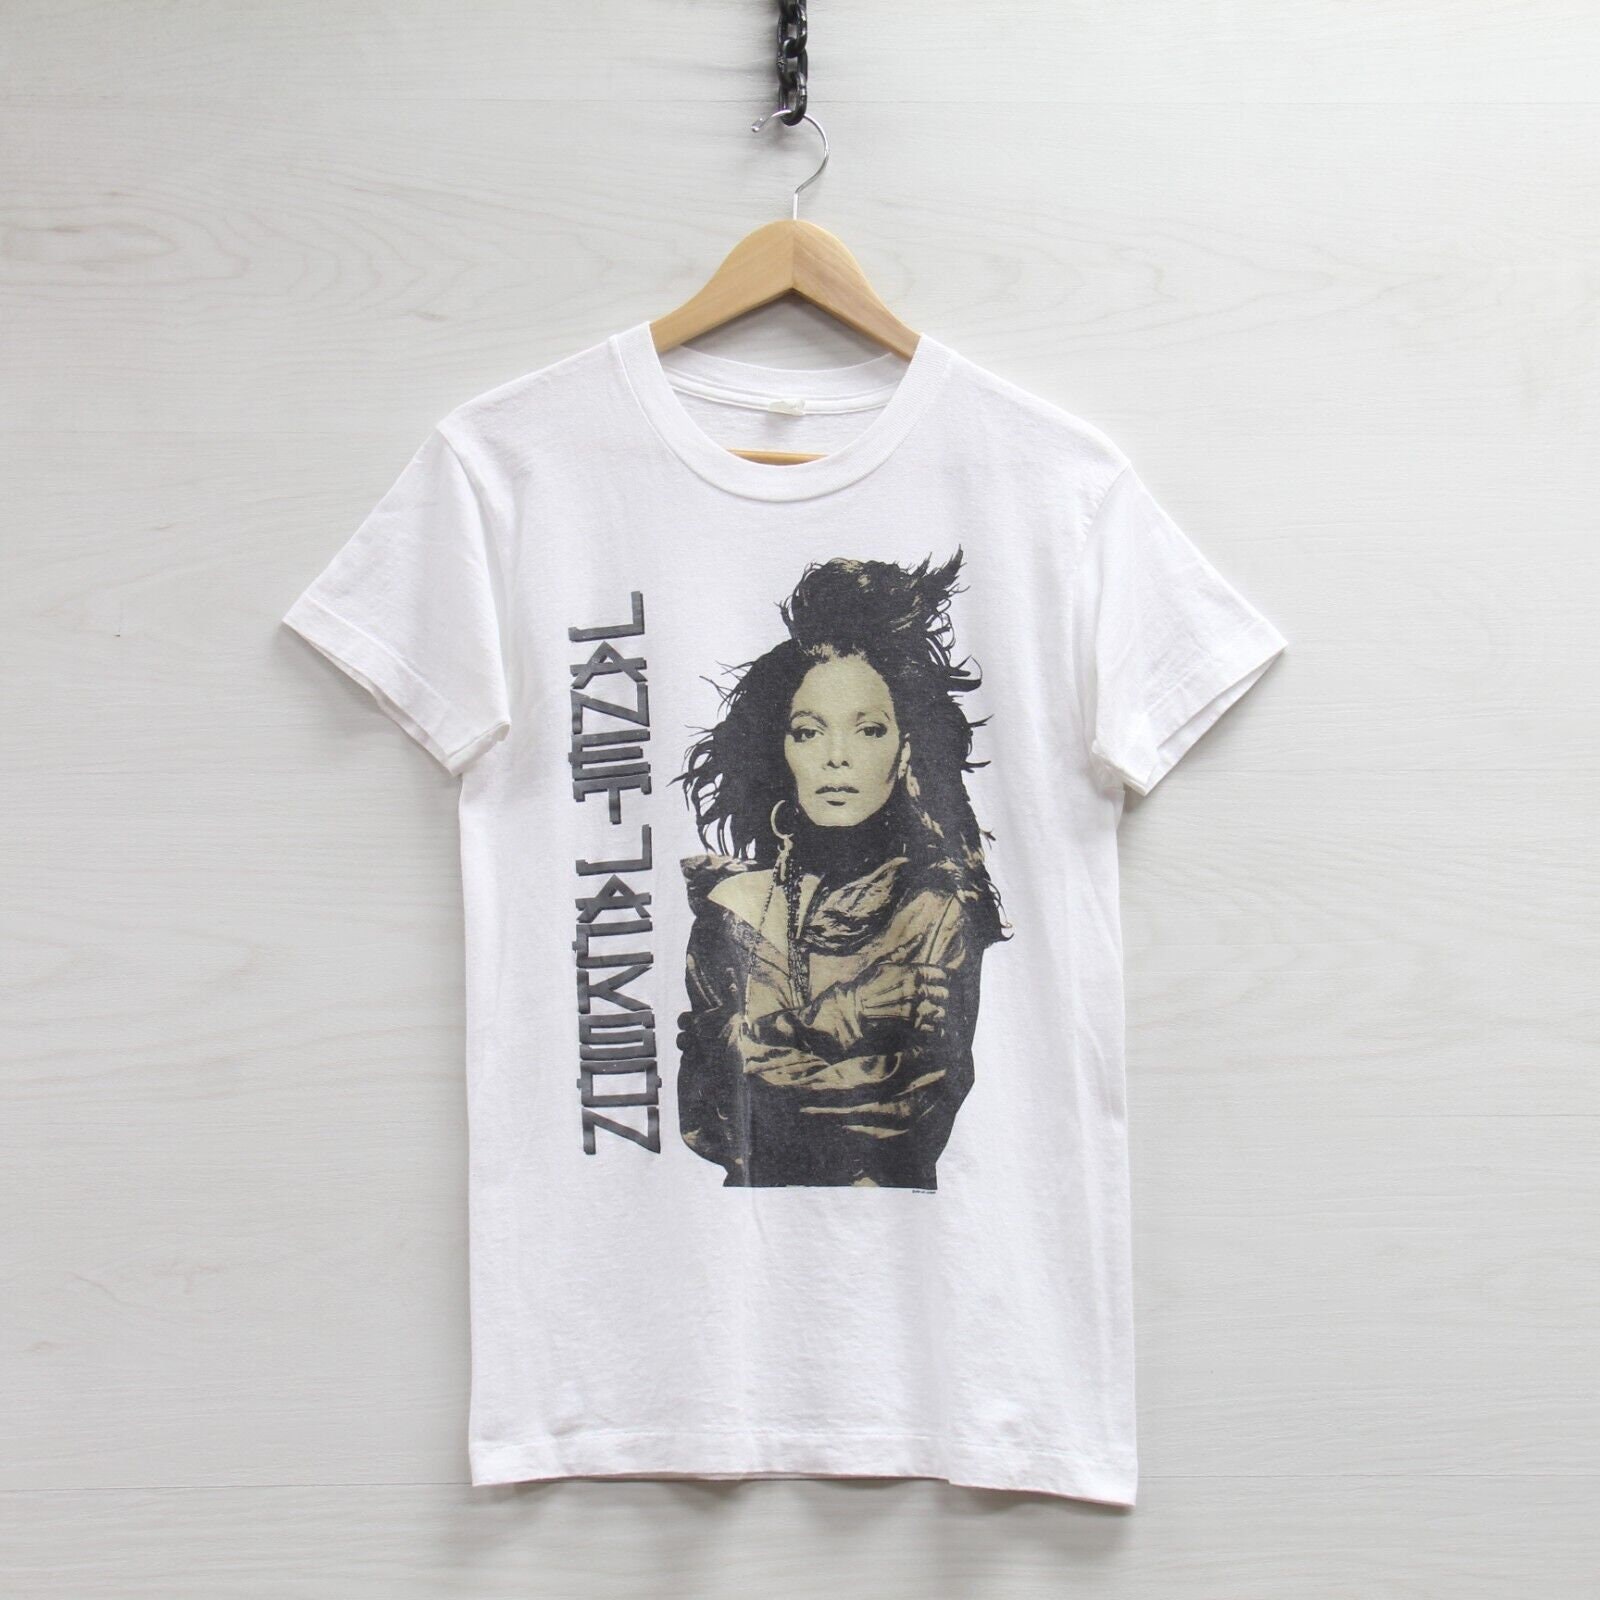 Janet Jackson Shirt - Etsy Canada